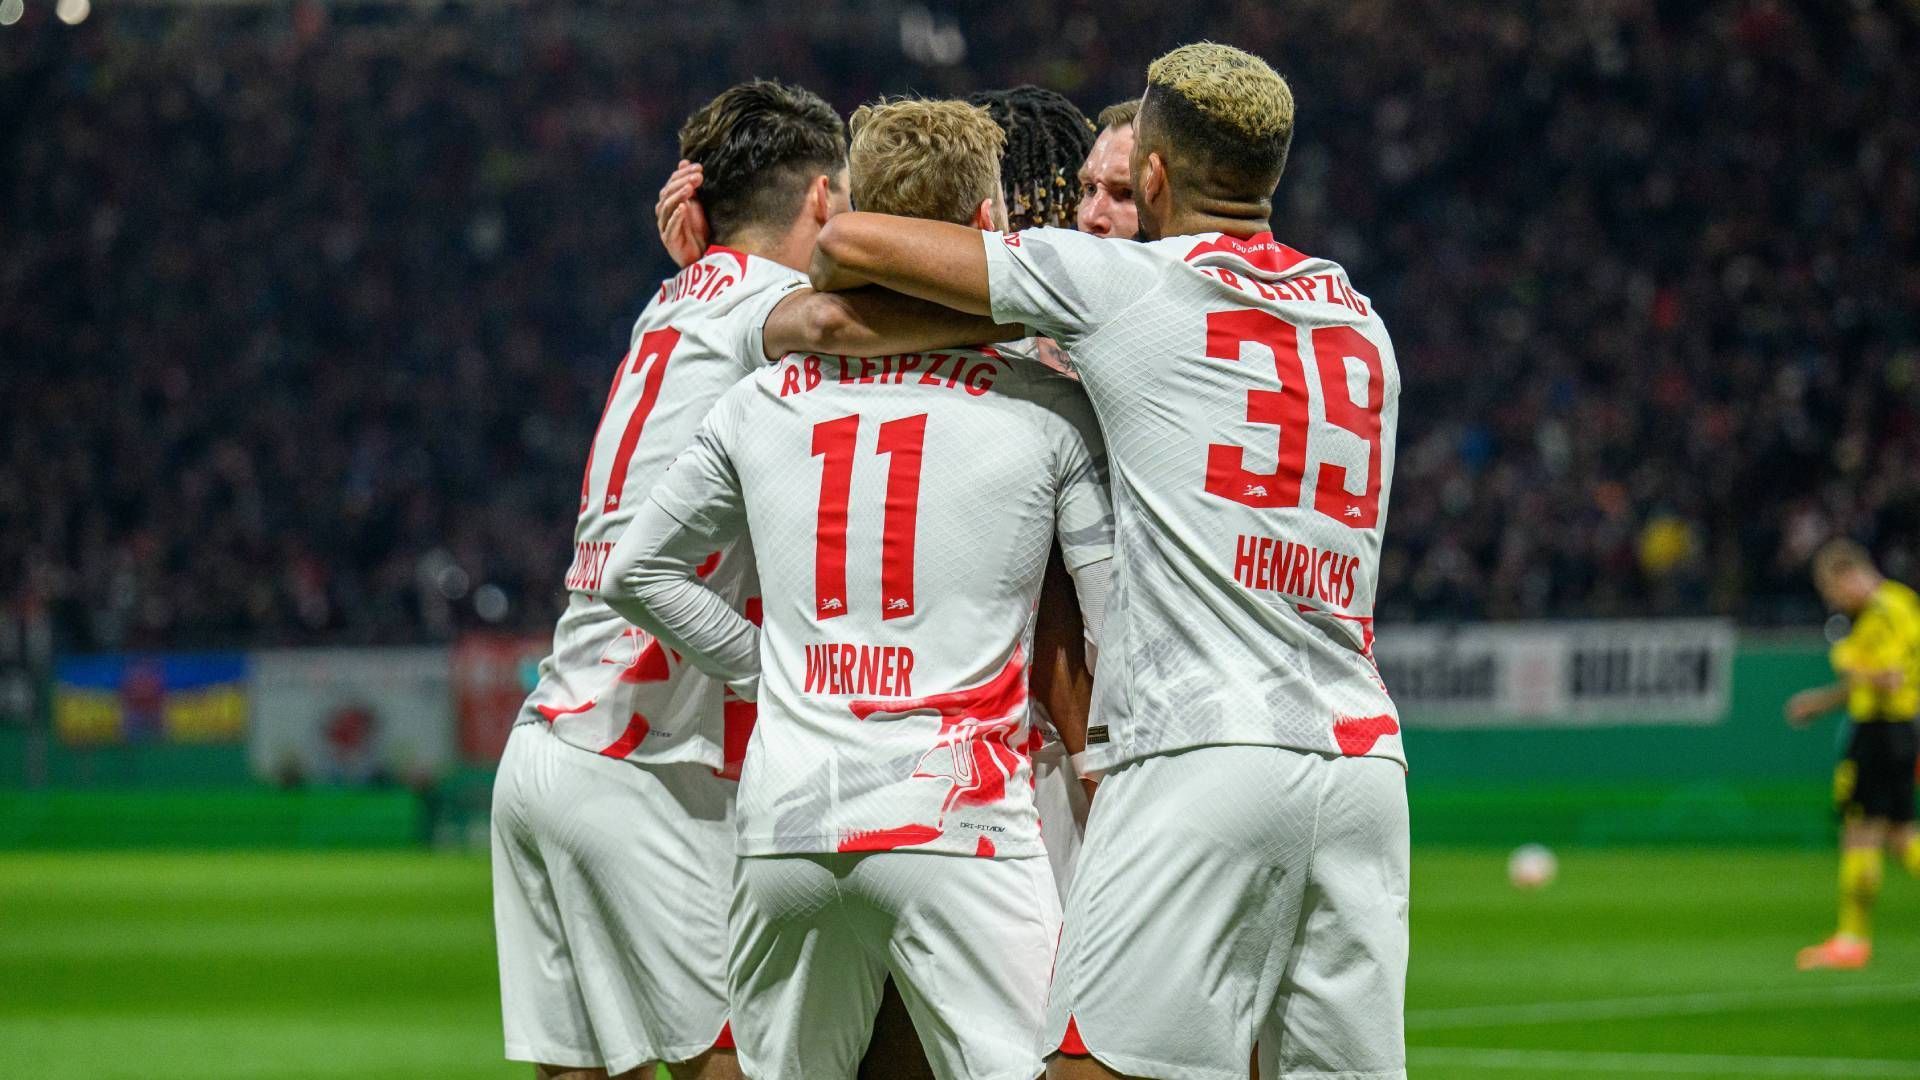 
                <strong>3. Platz: RB Leipzig</strong><br>
                Die Saison von RB Leipzig vor allem in den vergangenen paar Wochen war ein stetes Auf und Ab. Seit Anfang März gab es in zehn Pflichtspielen fünf Siege und fünf Niederlagen. Allerdings waren die jüngsten Erfolge gegen Teams aus dem Tabellenkeller wie Hertha, Augsburg und Hoffenheim teilweise schwer erkämpft, die Leichtigkeit fehlt derzeit. In die Neuauflage des letztjährigen Pokalfinals gegen die Freiburger gehen die Sachsen aufgrund der aktuellen Form als Außenseiter.
              